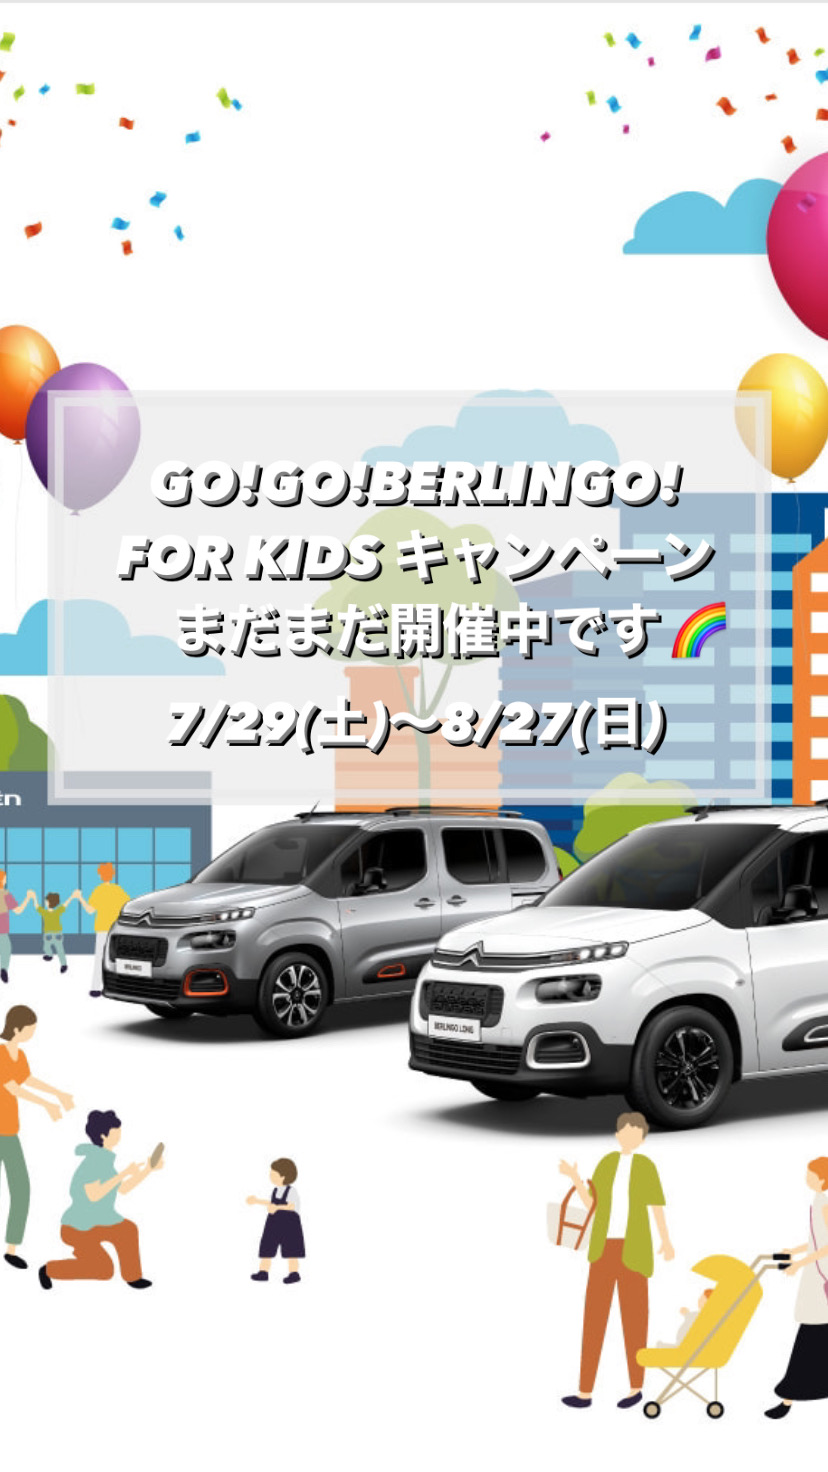 【　GO！GO！BERLINGO　FOR KID キャンペーン開催中🍋　】